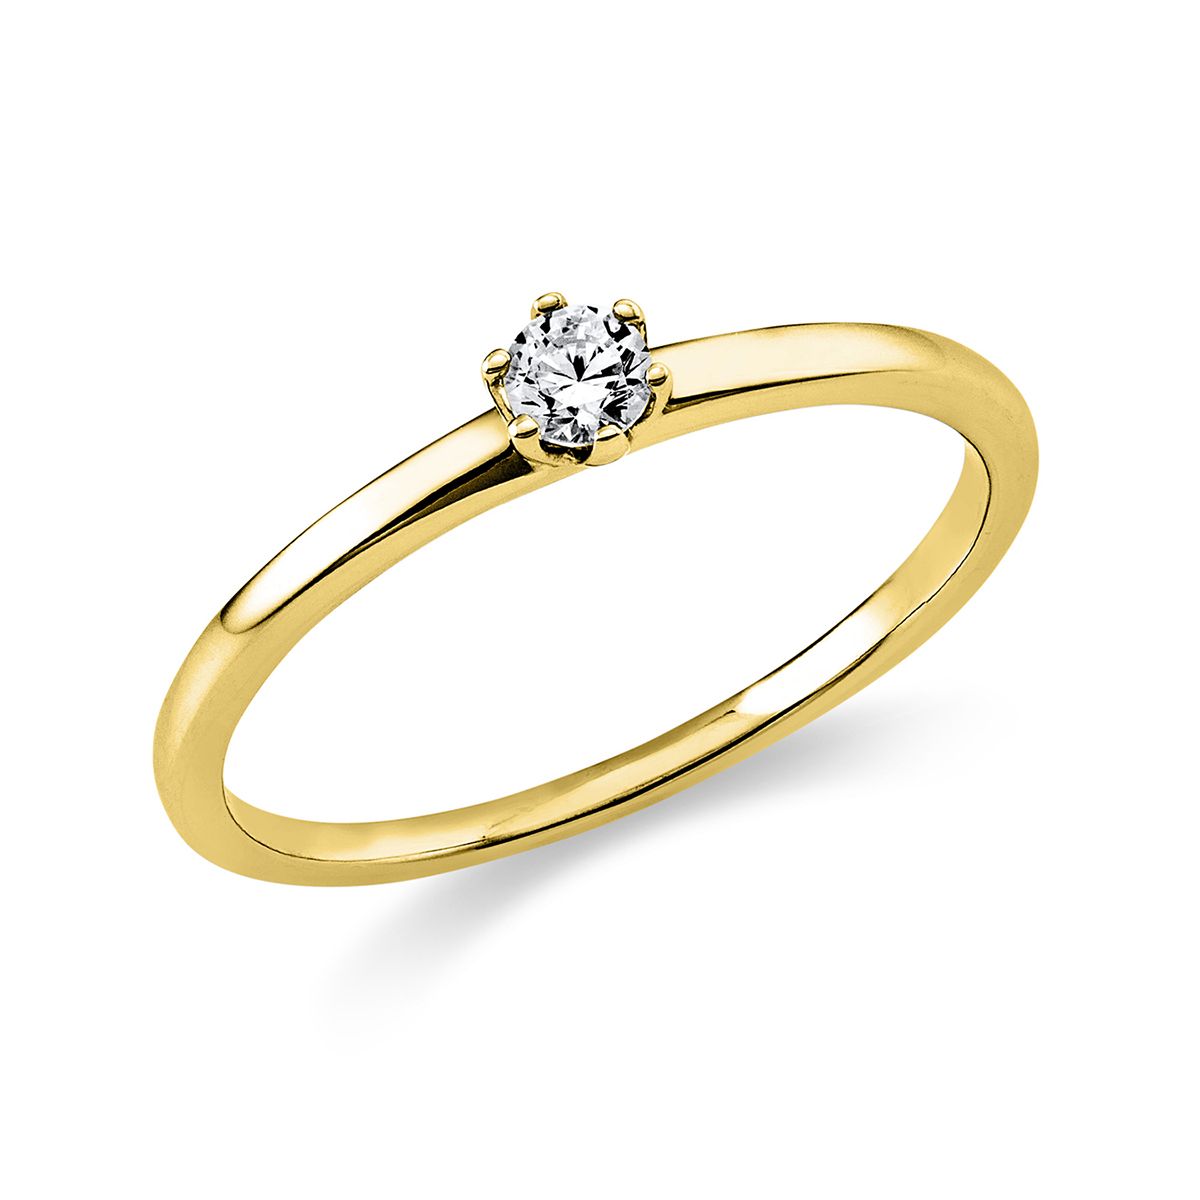 Solitär-Ring 6-Griff-Fassung 585/14K Gelbgold, Diamant 0.1 ct.